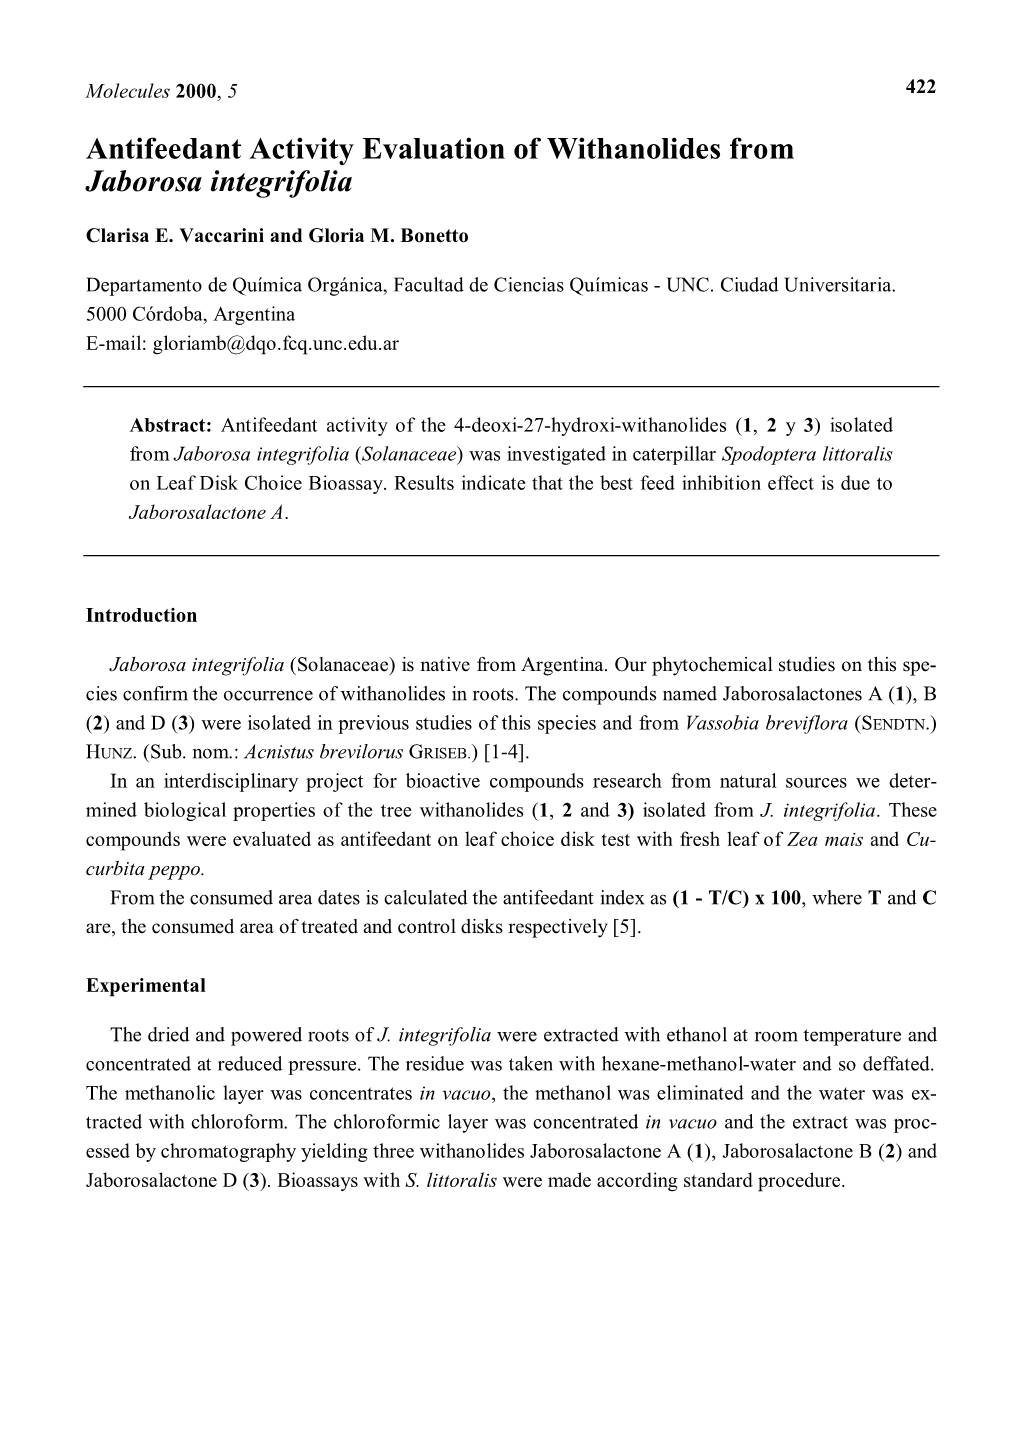 Antifeedant Activity Evaluation of Withanolides from Jaborosa Integrifolia